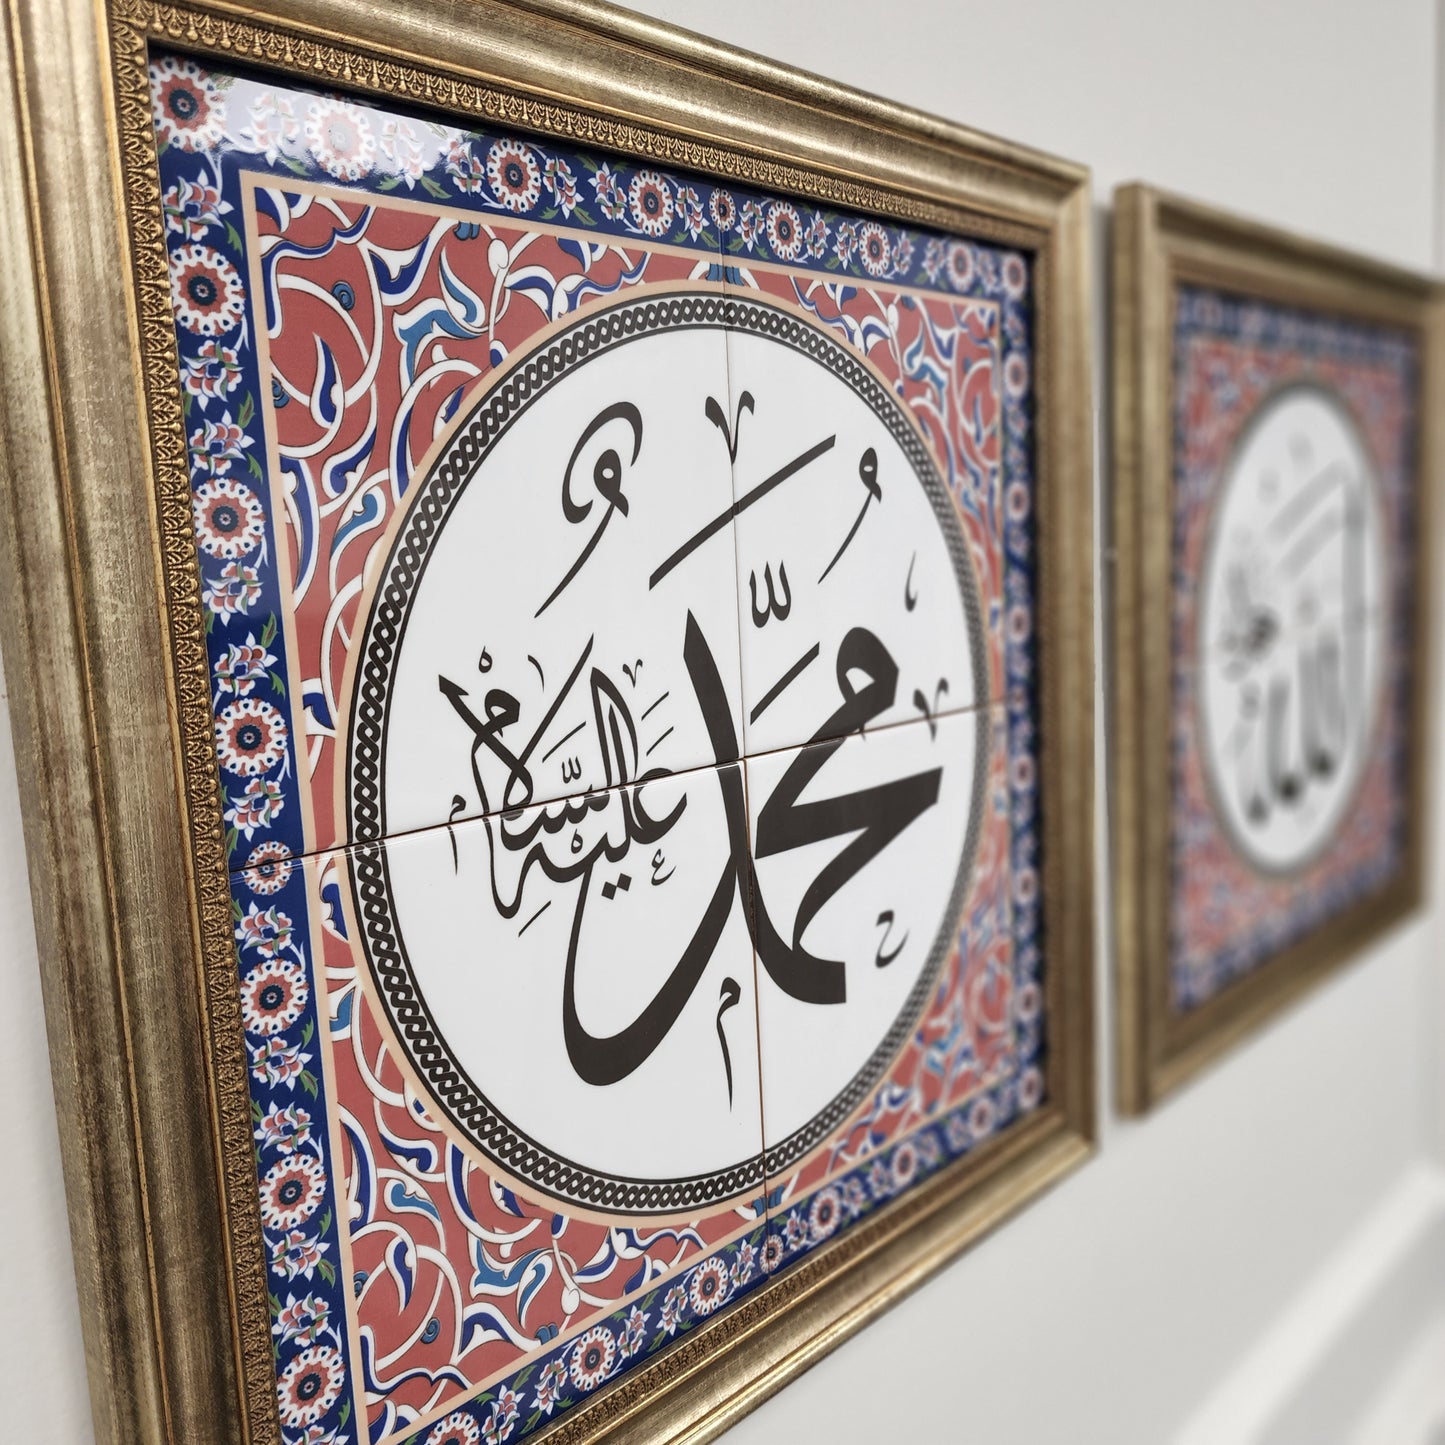 Muhammad - Islamic Art Calligraphy Ceramic Tile Framed